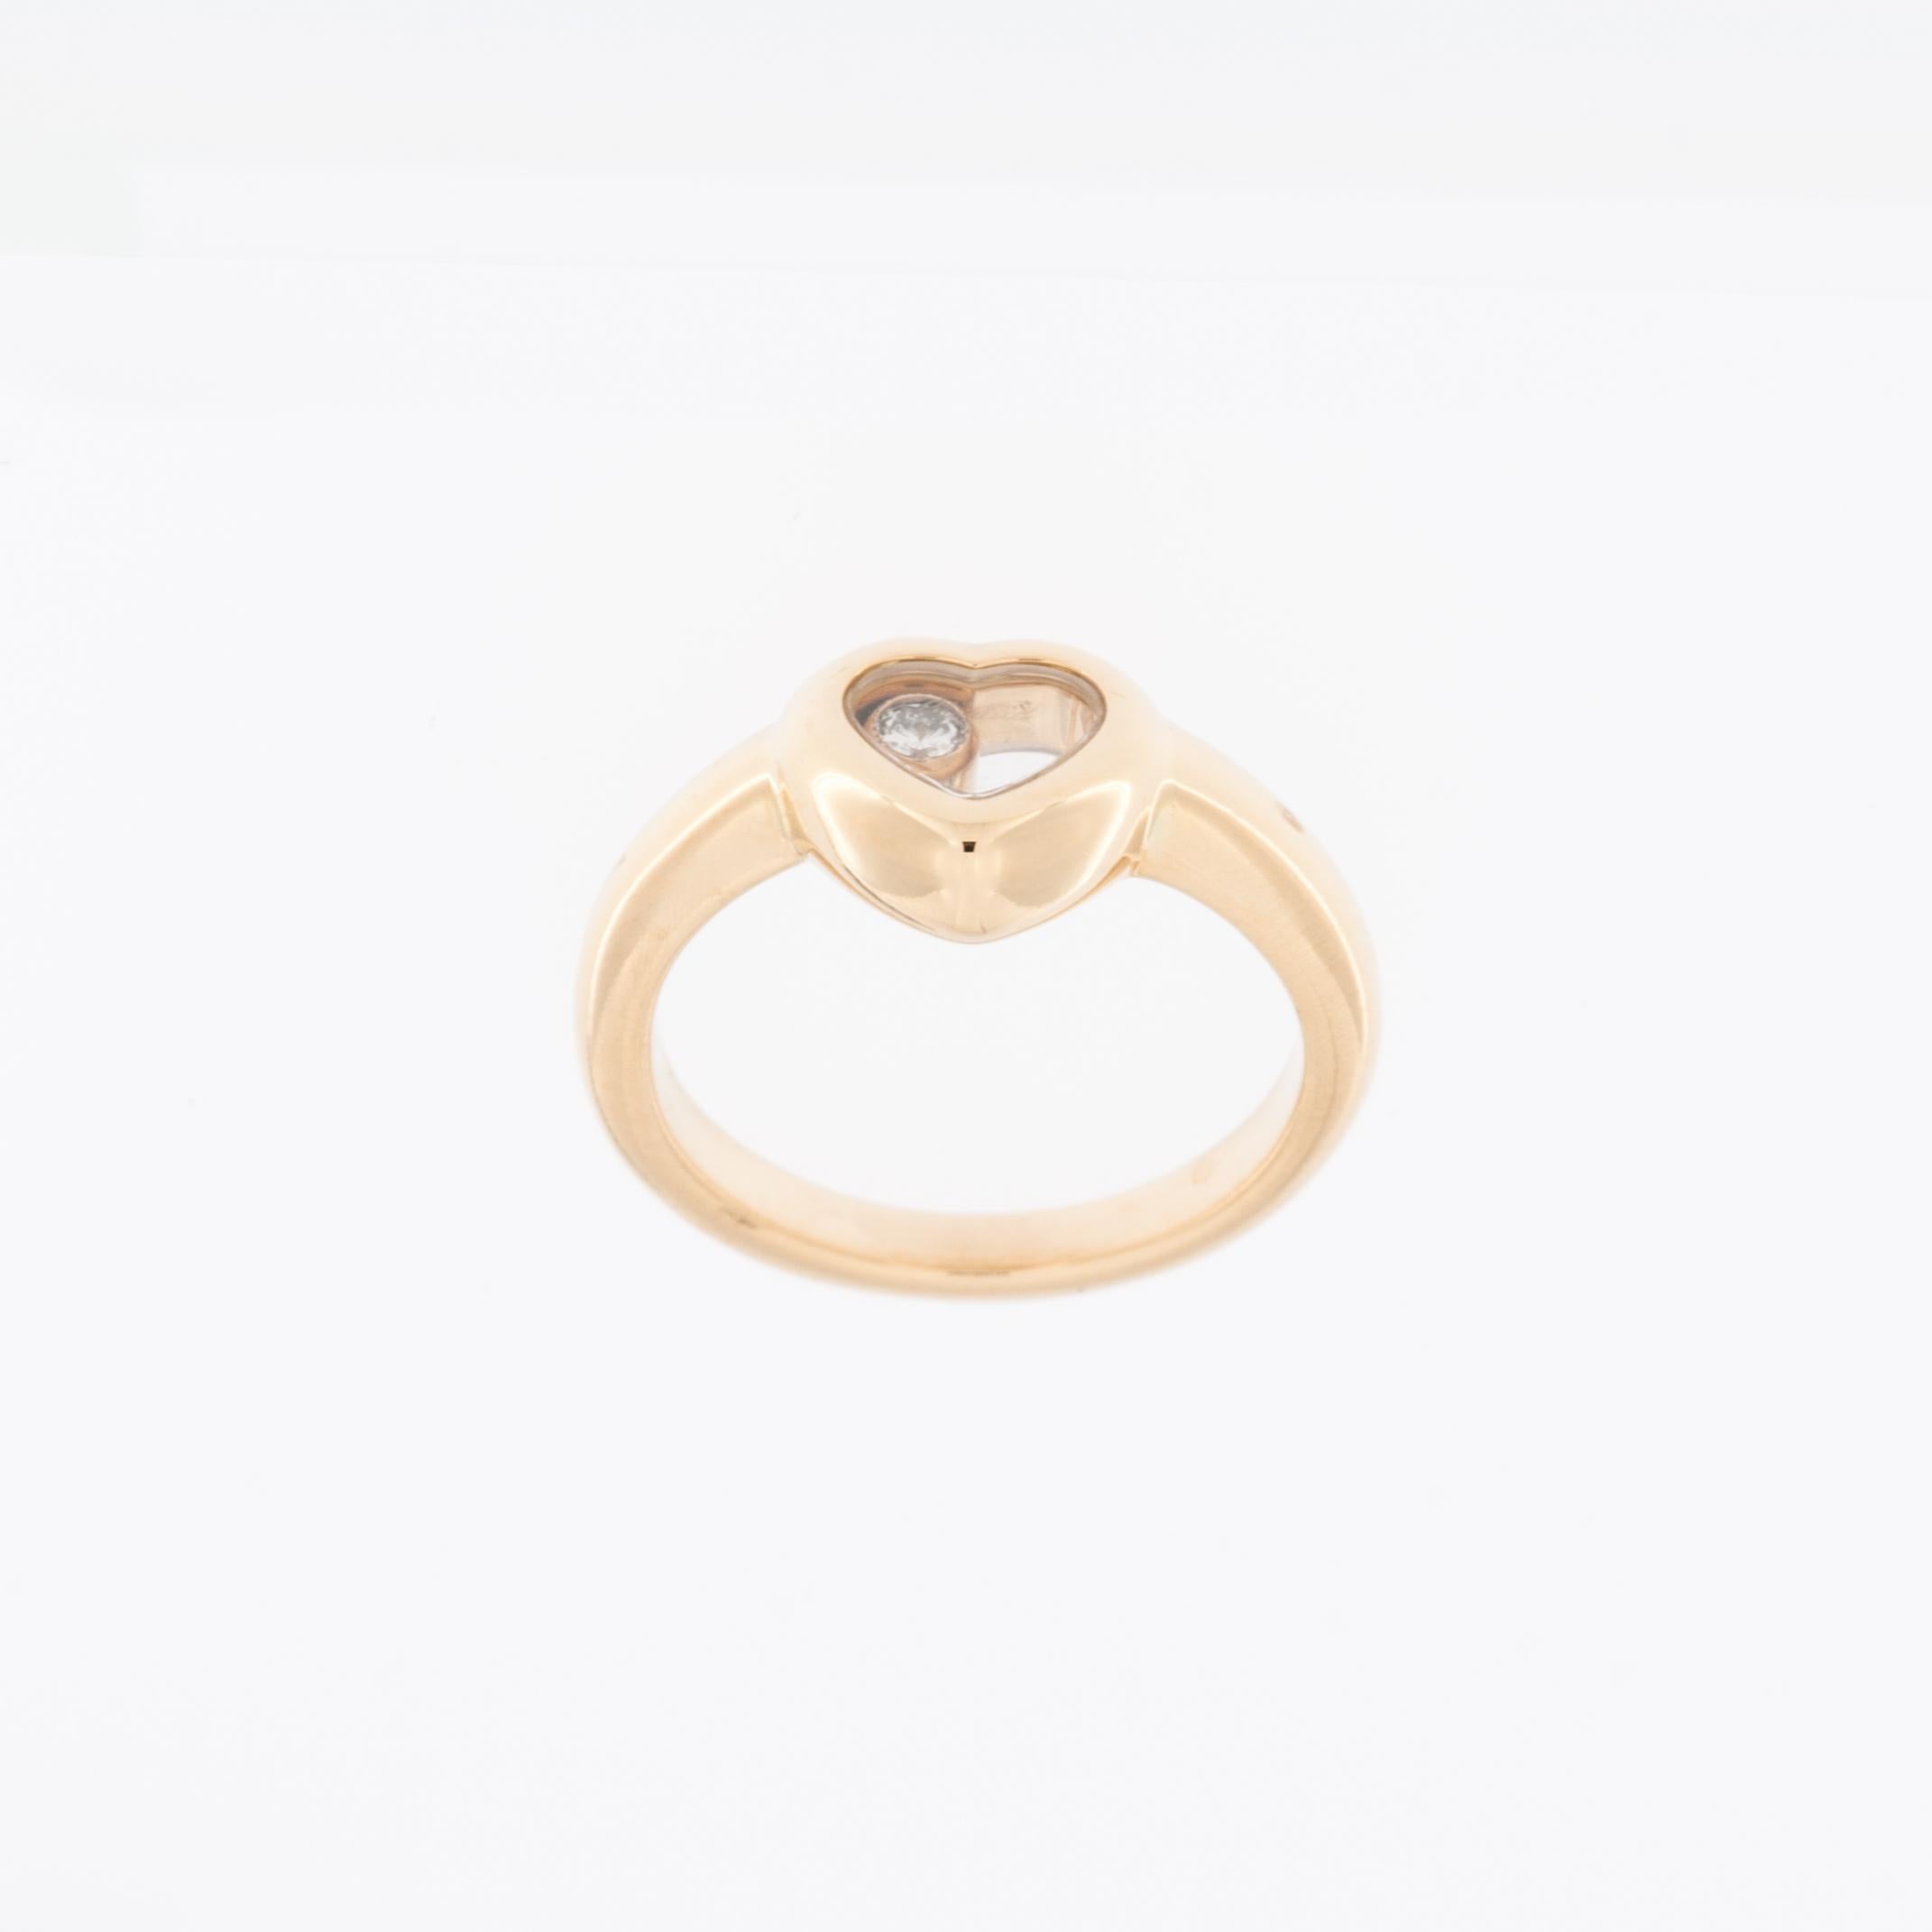 Der Chopard Happy Diamond Heart Ring ist ein luxuriöses und ikonisches Schmuckstück, das Raffinesse mit einem verspielten Touch verbindet. 

Der sorgfältig aus 18 Karat Gelbgold gefertigte Ring zeichnet sich durch ein hohes Maß an Reinheit und